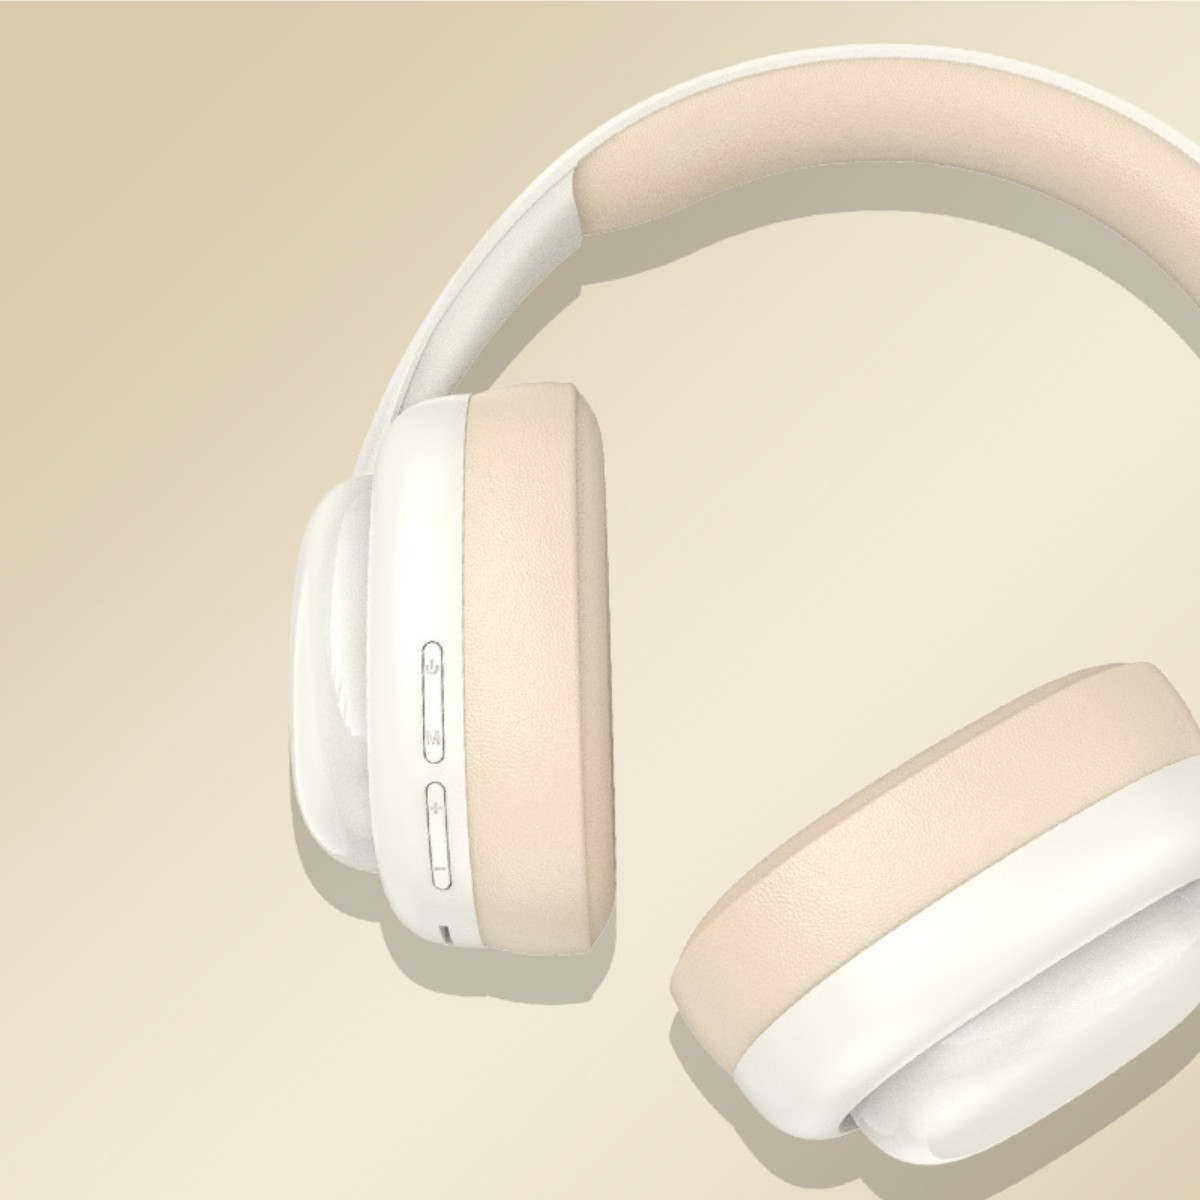 SYNTEK Kopfhörern, Weiß Over-ear Bluetooth Bluetooth-Kopfhörer Kopfhörer weiße Kopfhörer, Bluetooth mit